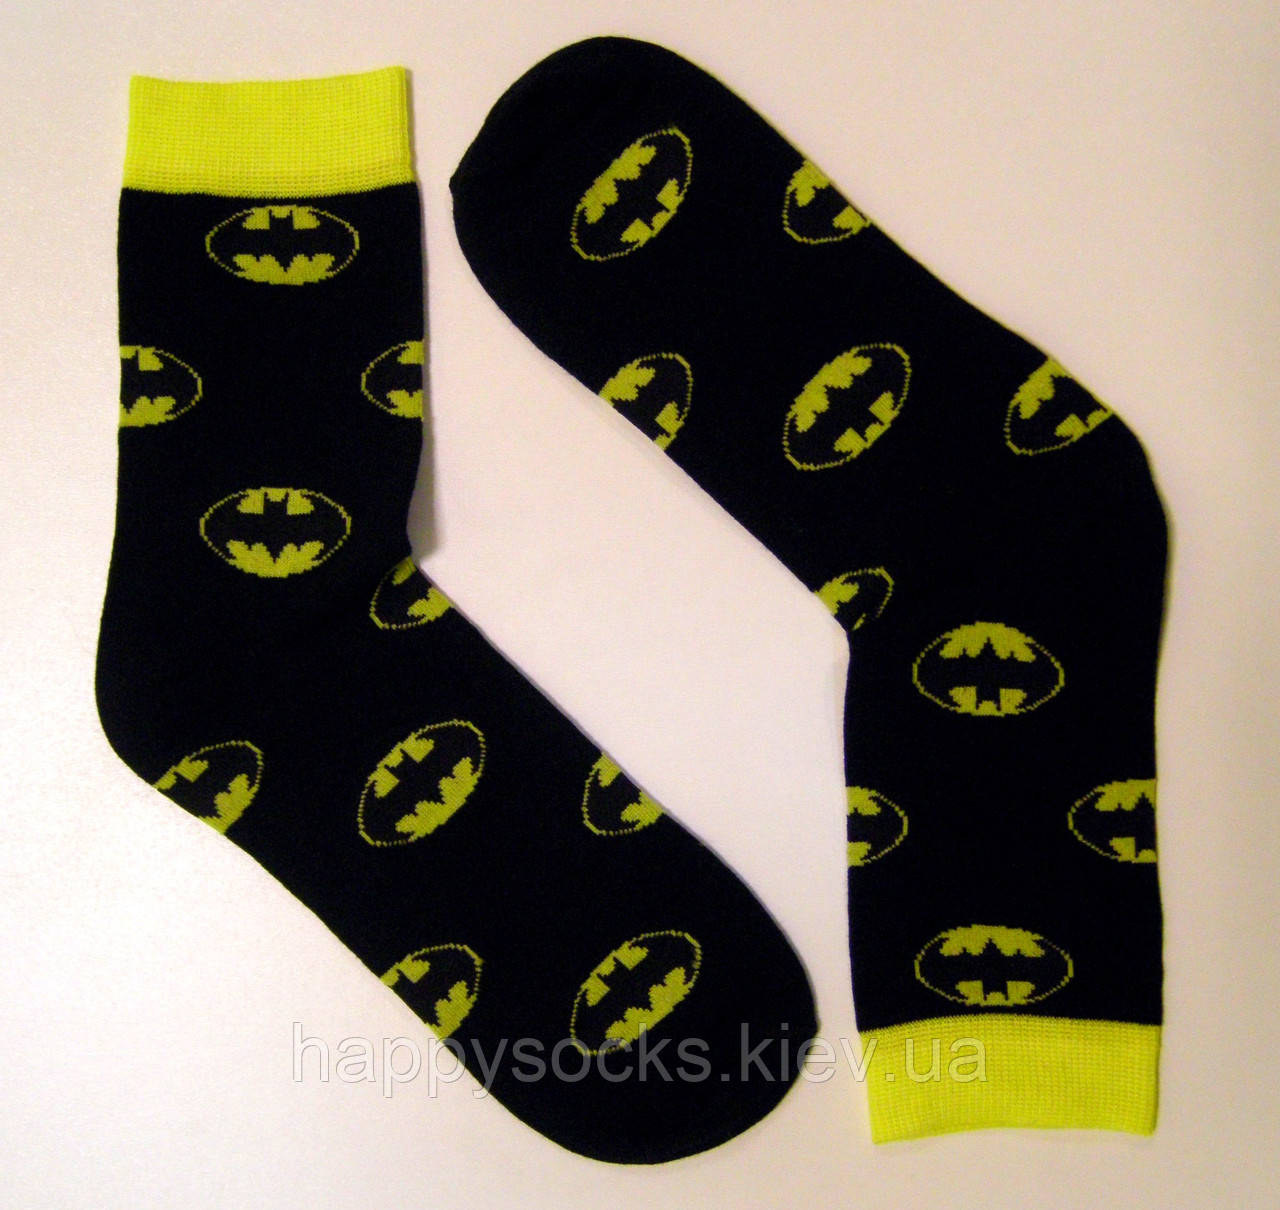 Кольорові жіночі шкарпетки бетмен 37-39р, фото 1